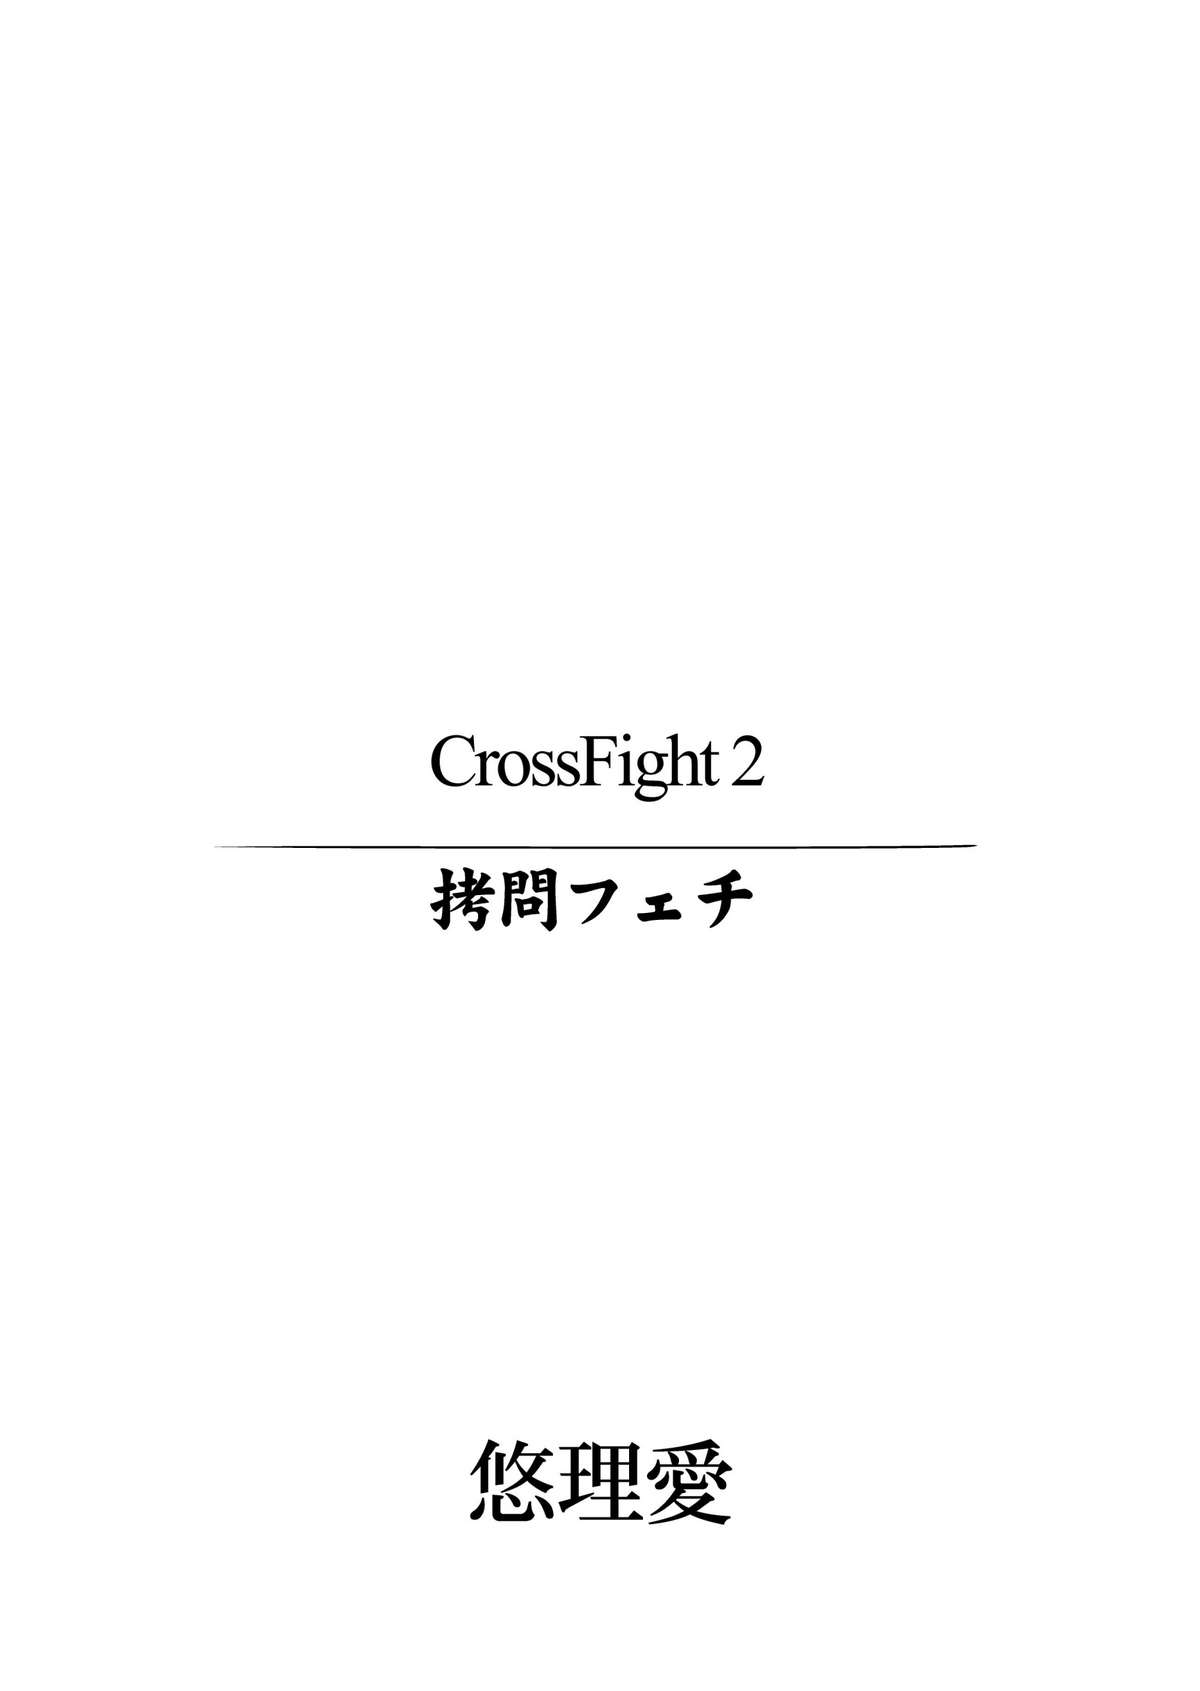 [悠理愛個人誌会 (悠理愛)] CrossFight2 (ストリートファイター, 鉄拳) [DL版]